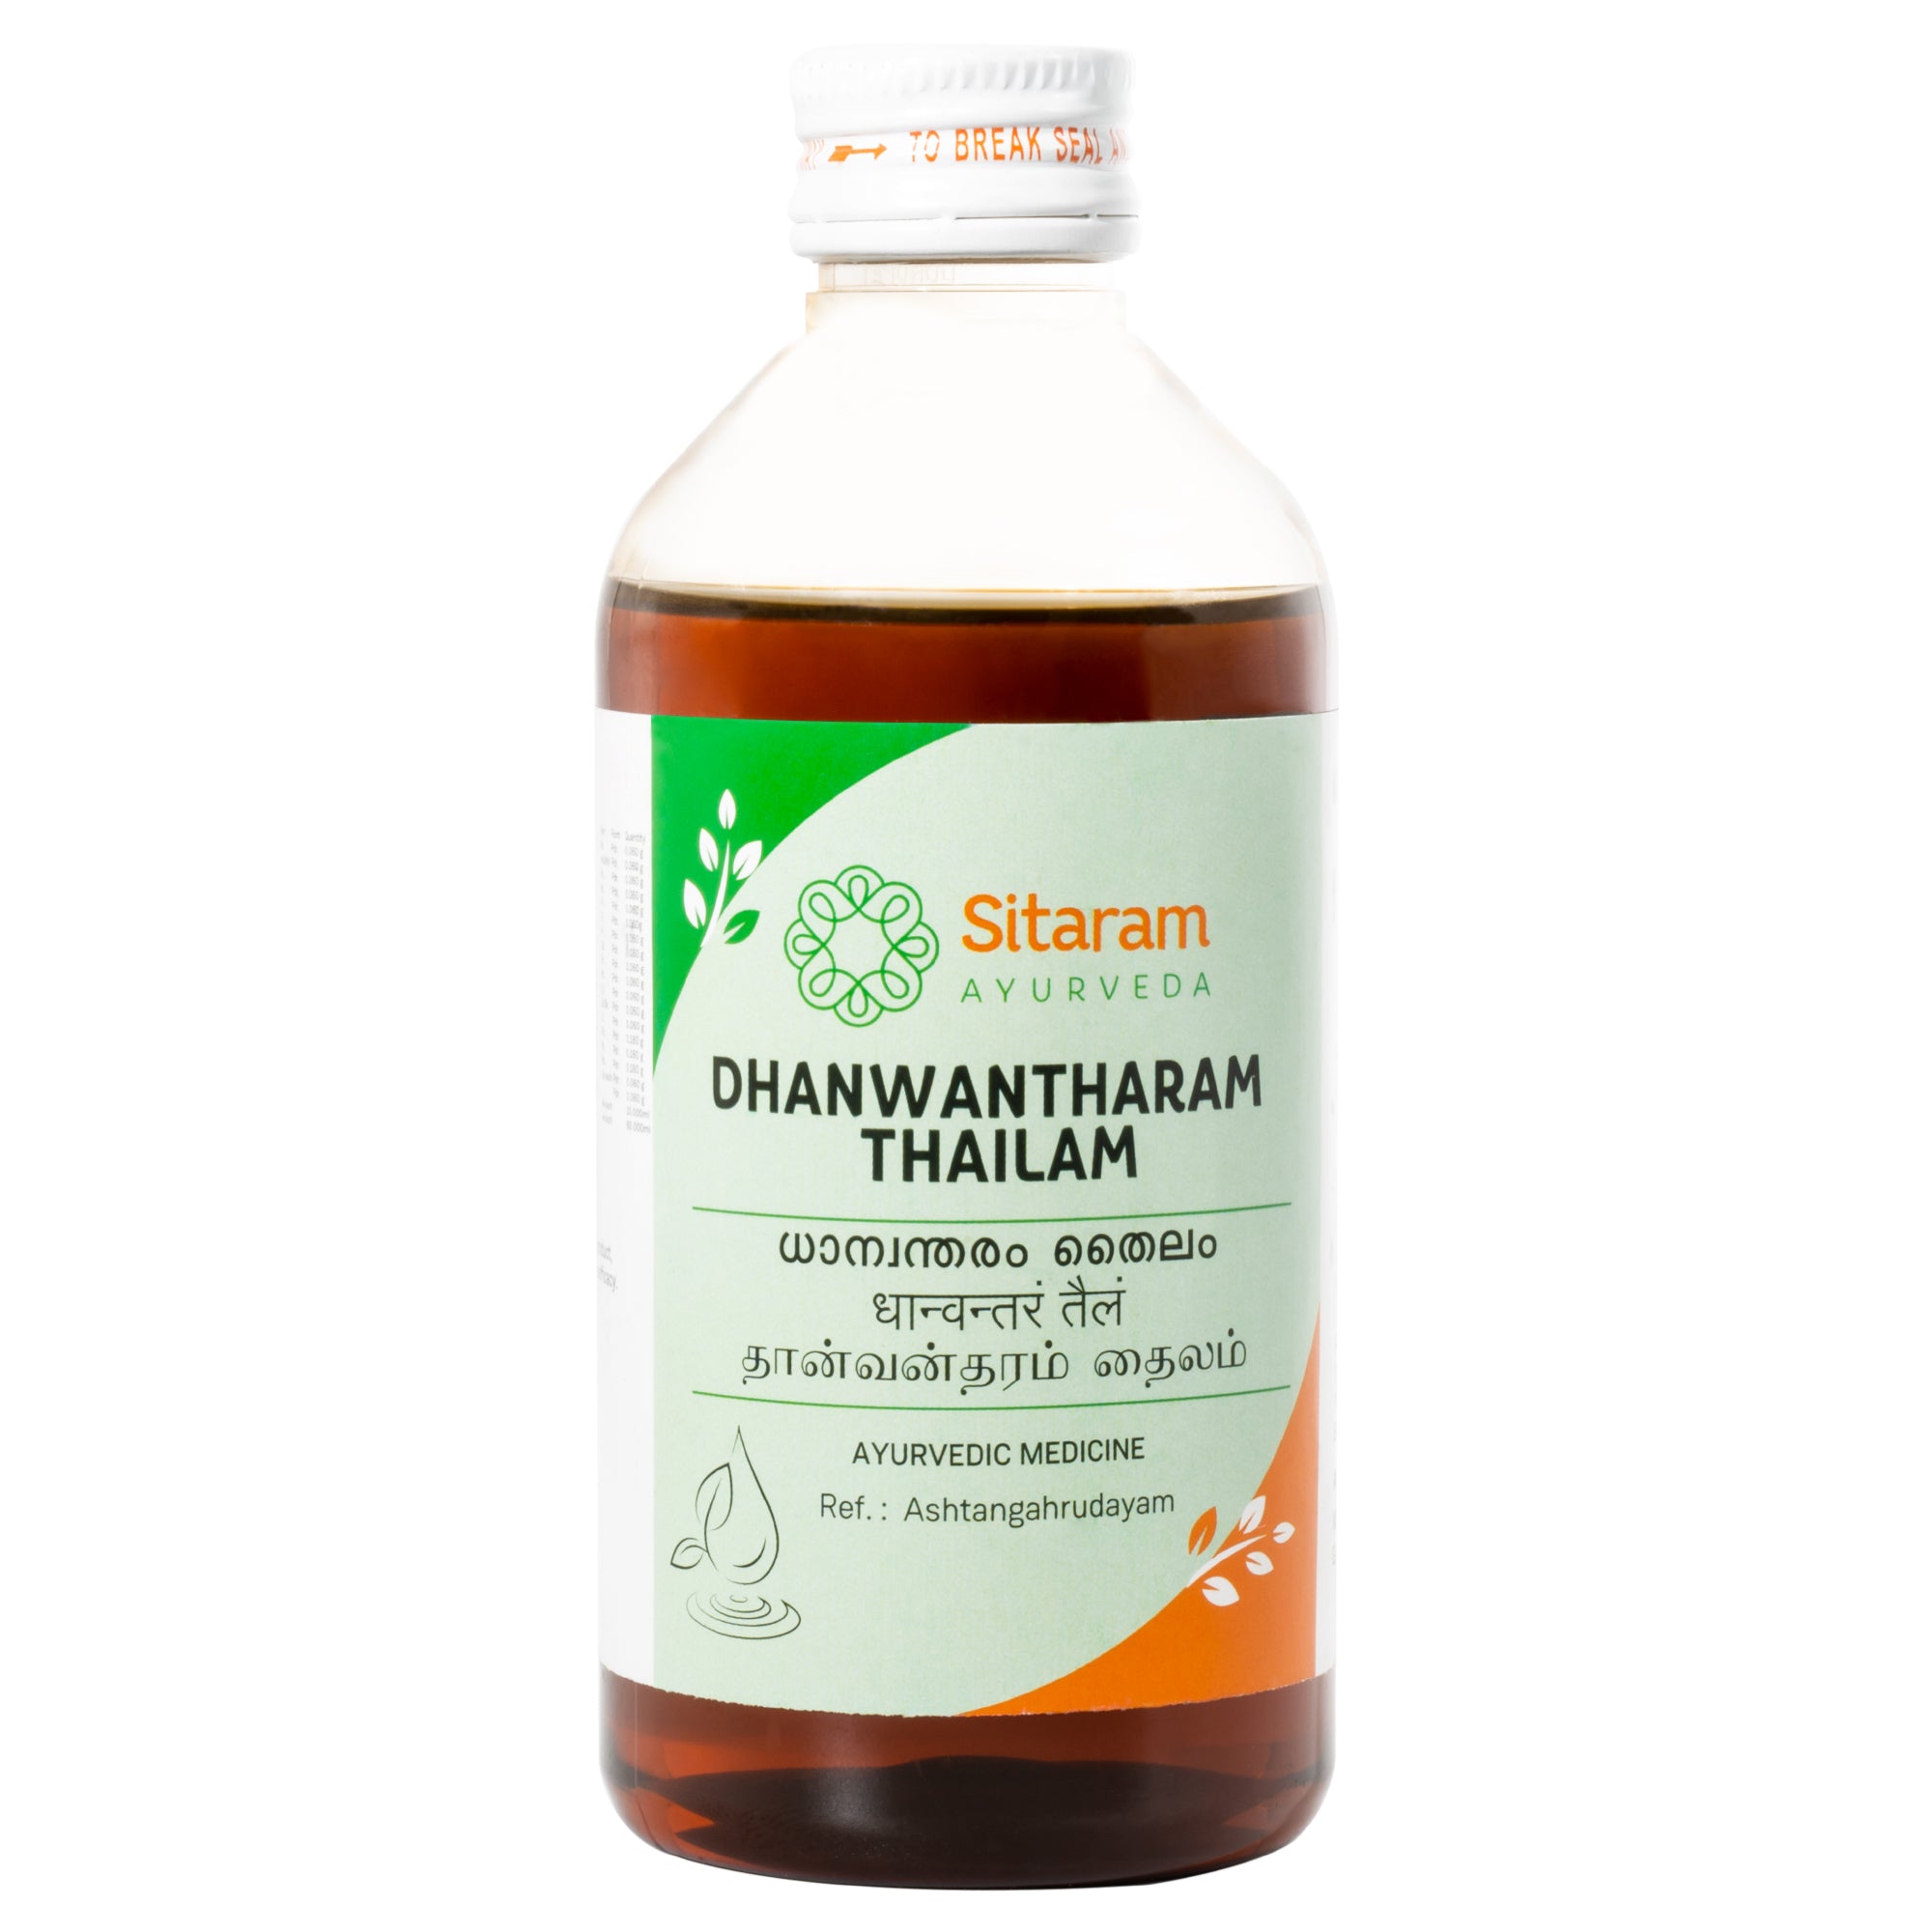 Sitaram Ayurveda Dhanwantaram Thailam 200 Ml (Prescription Medication)